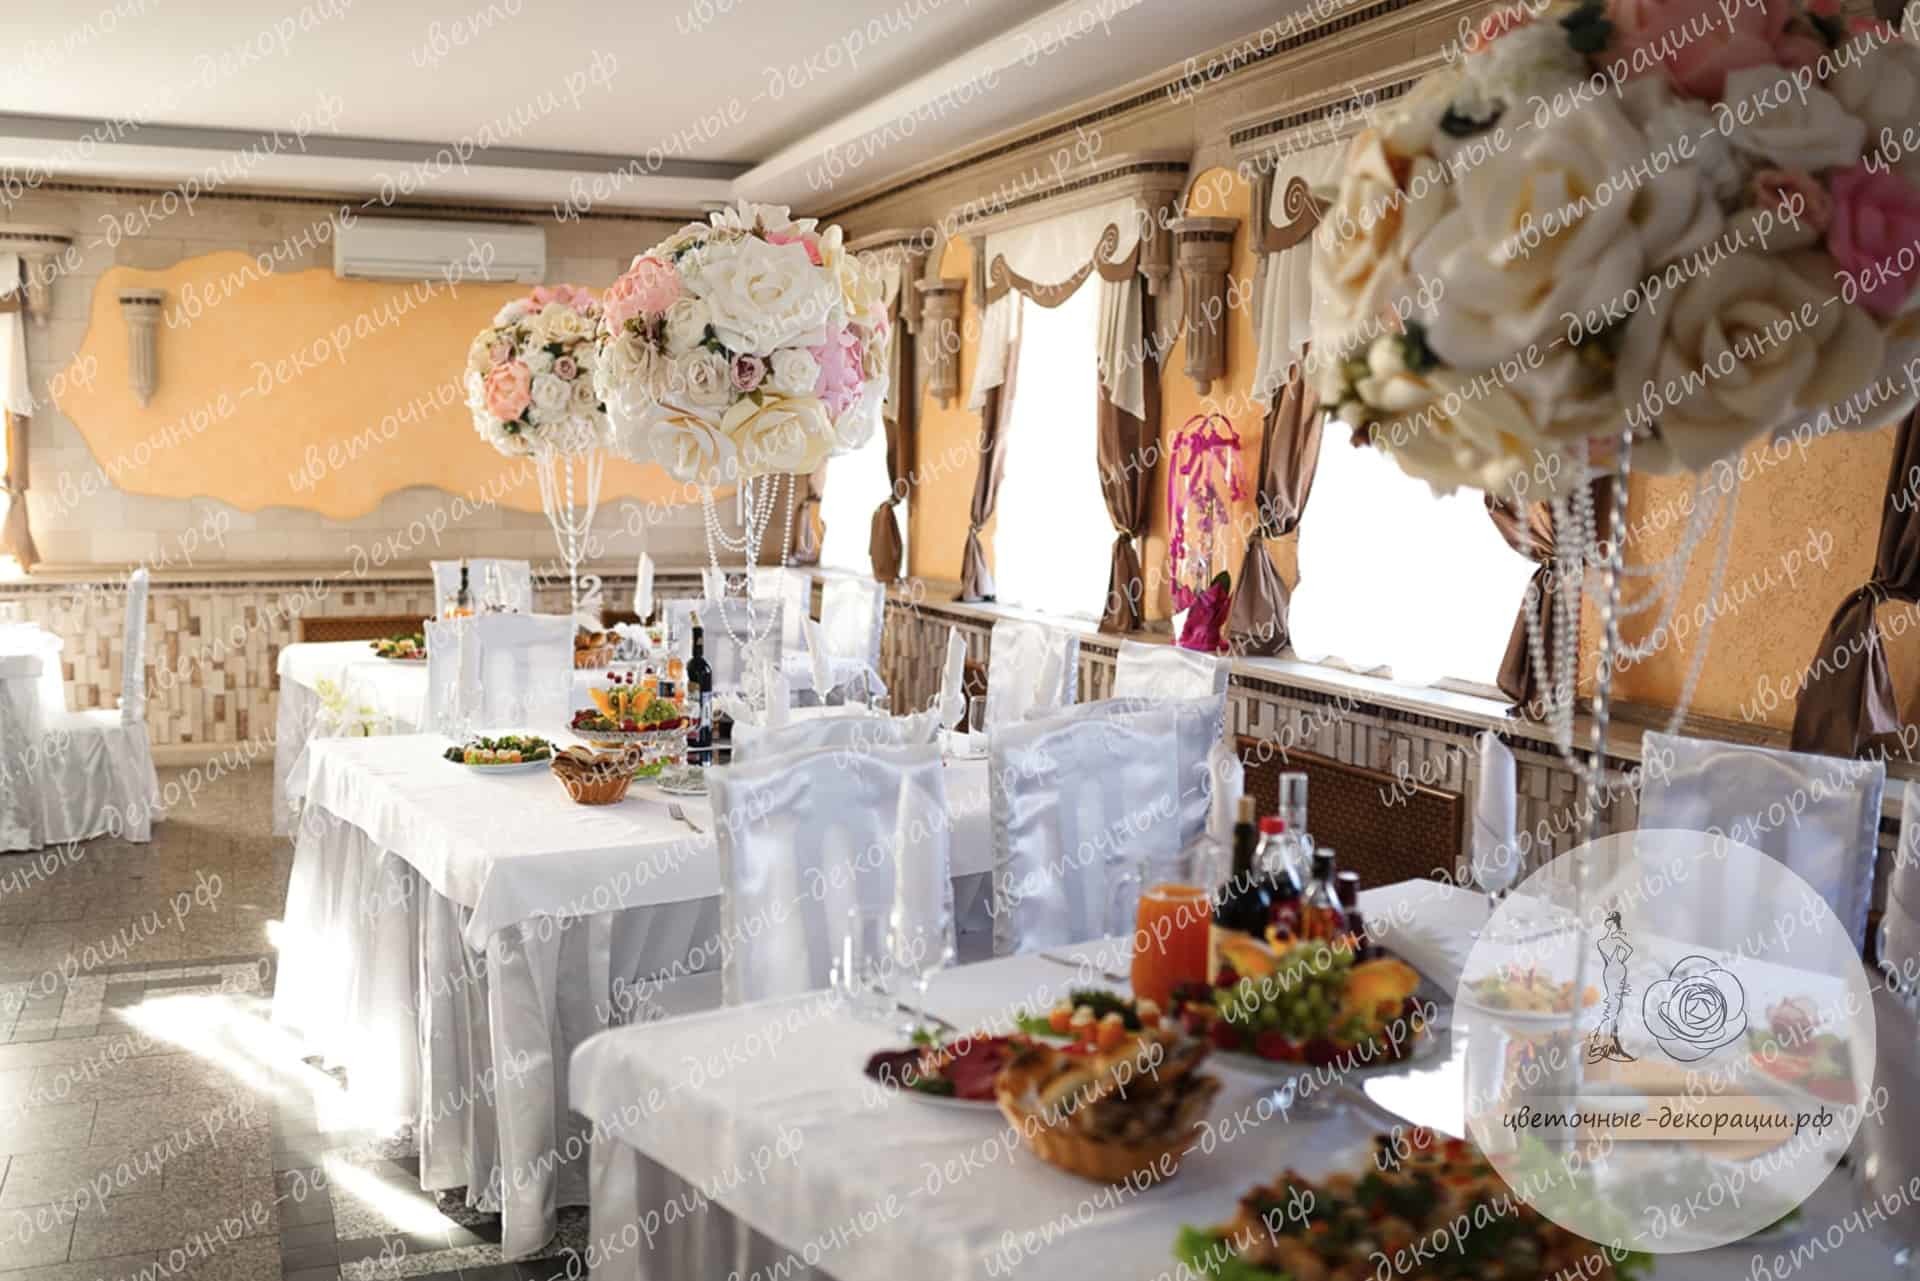 Цветы на столы гостей на свадьбу